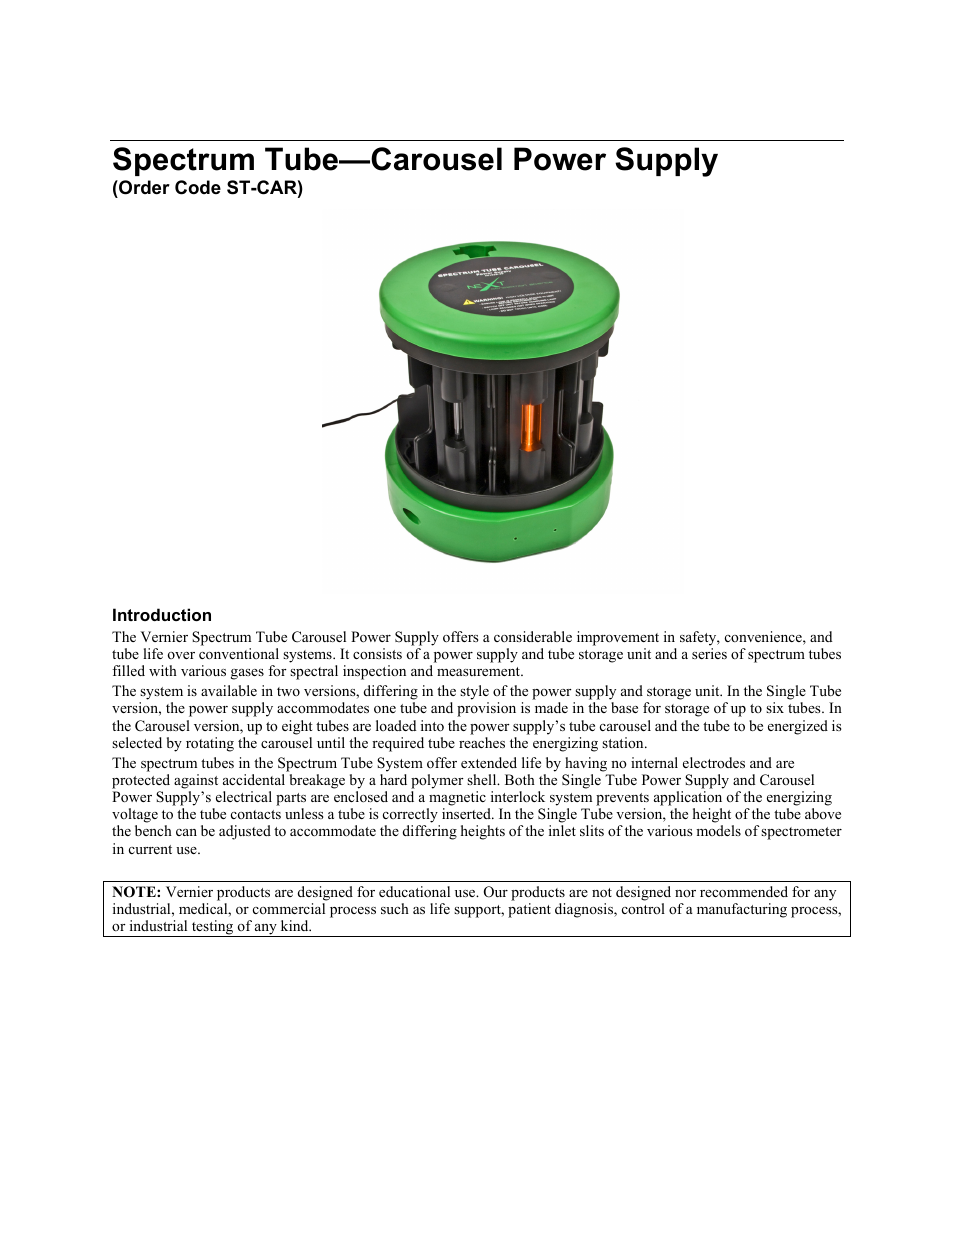 Spectrum Tube Carousel Power Supply